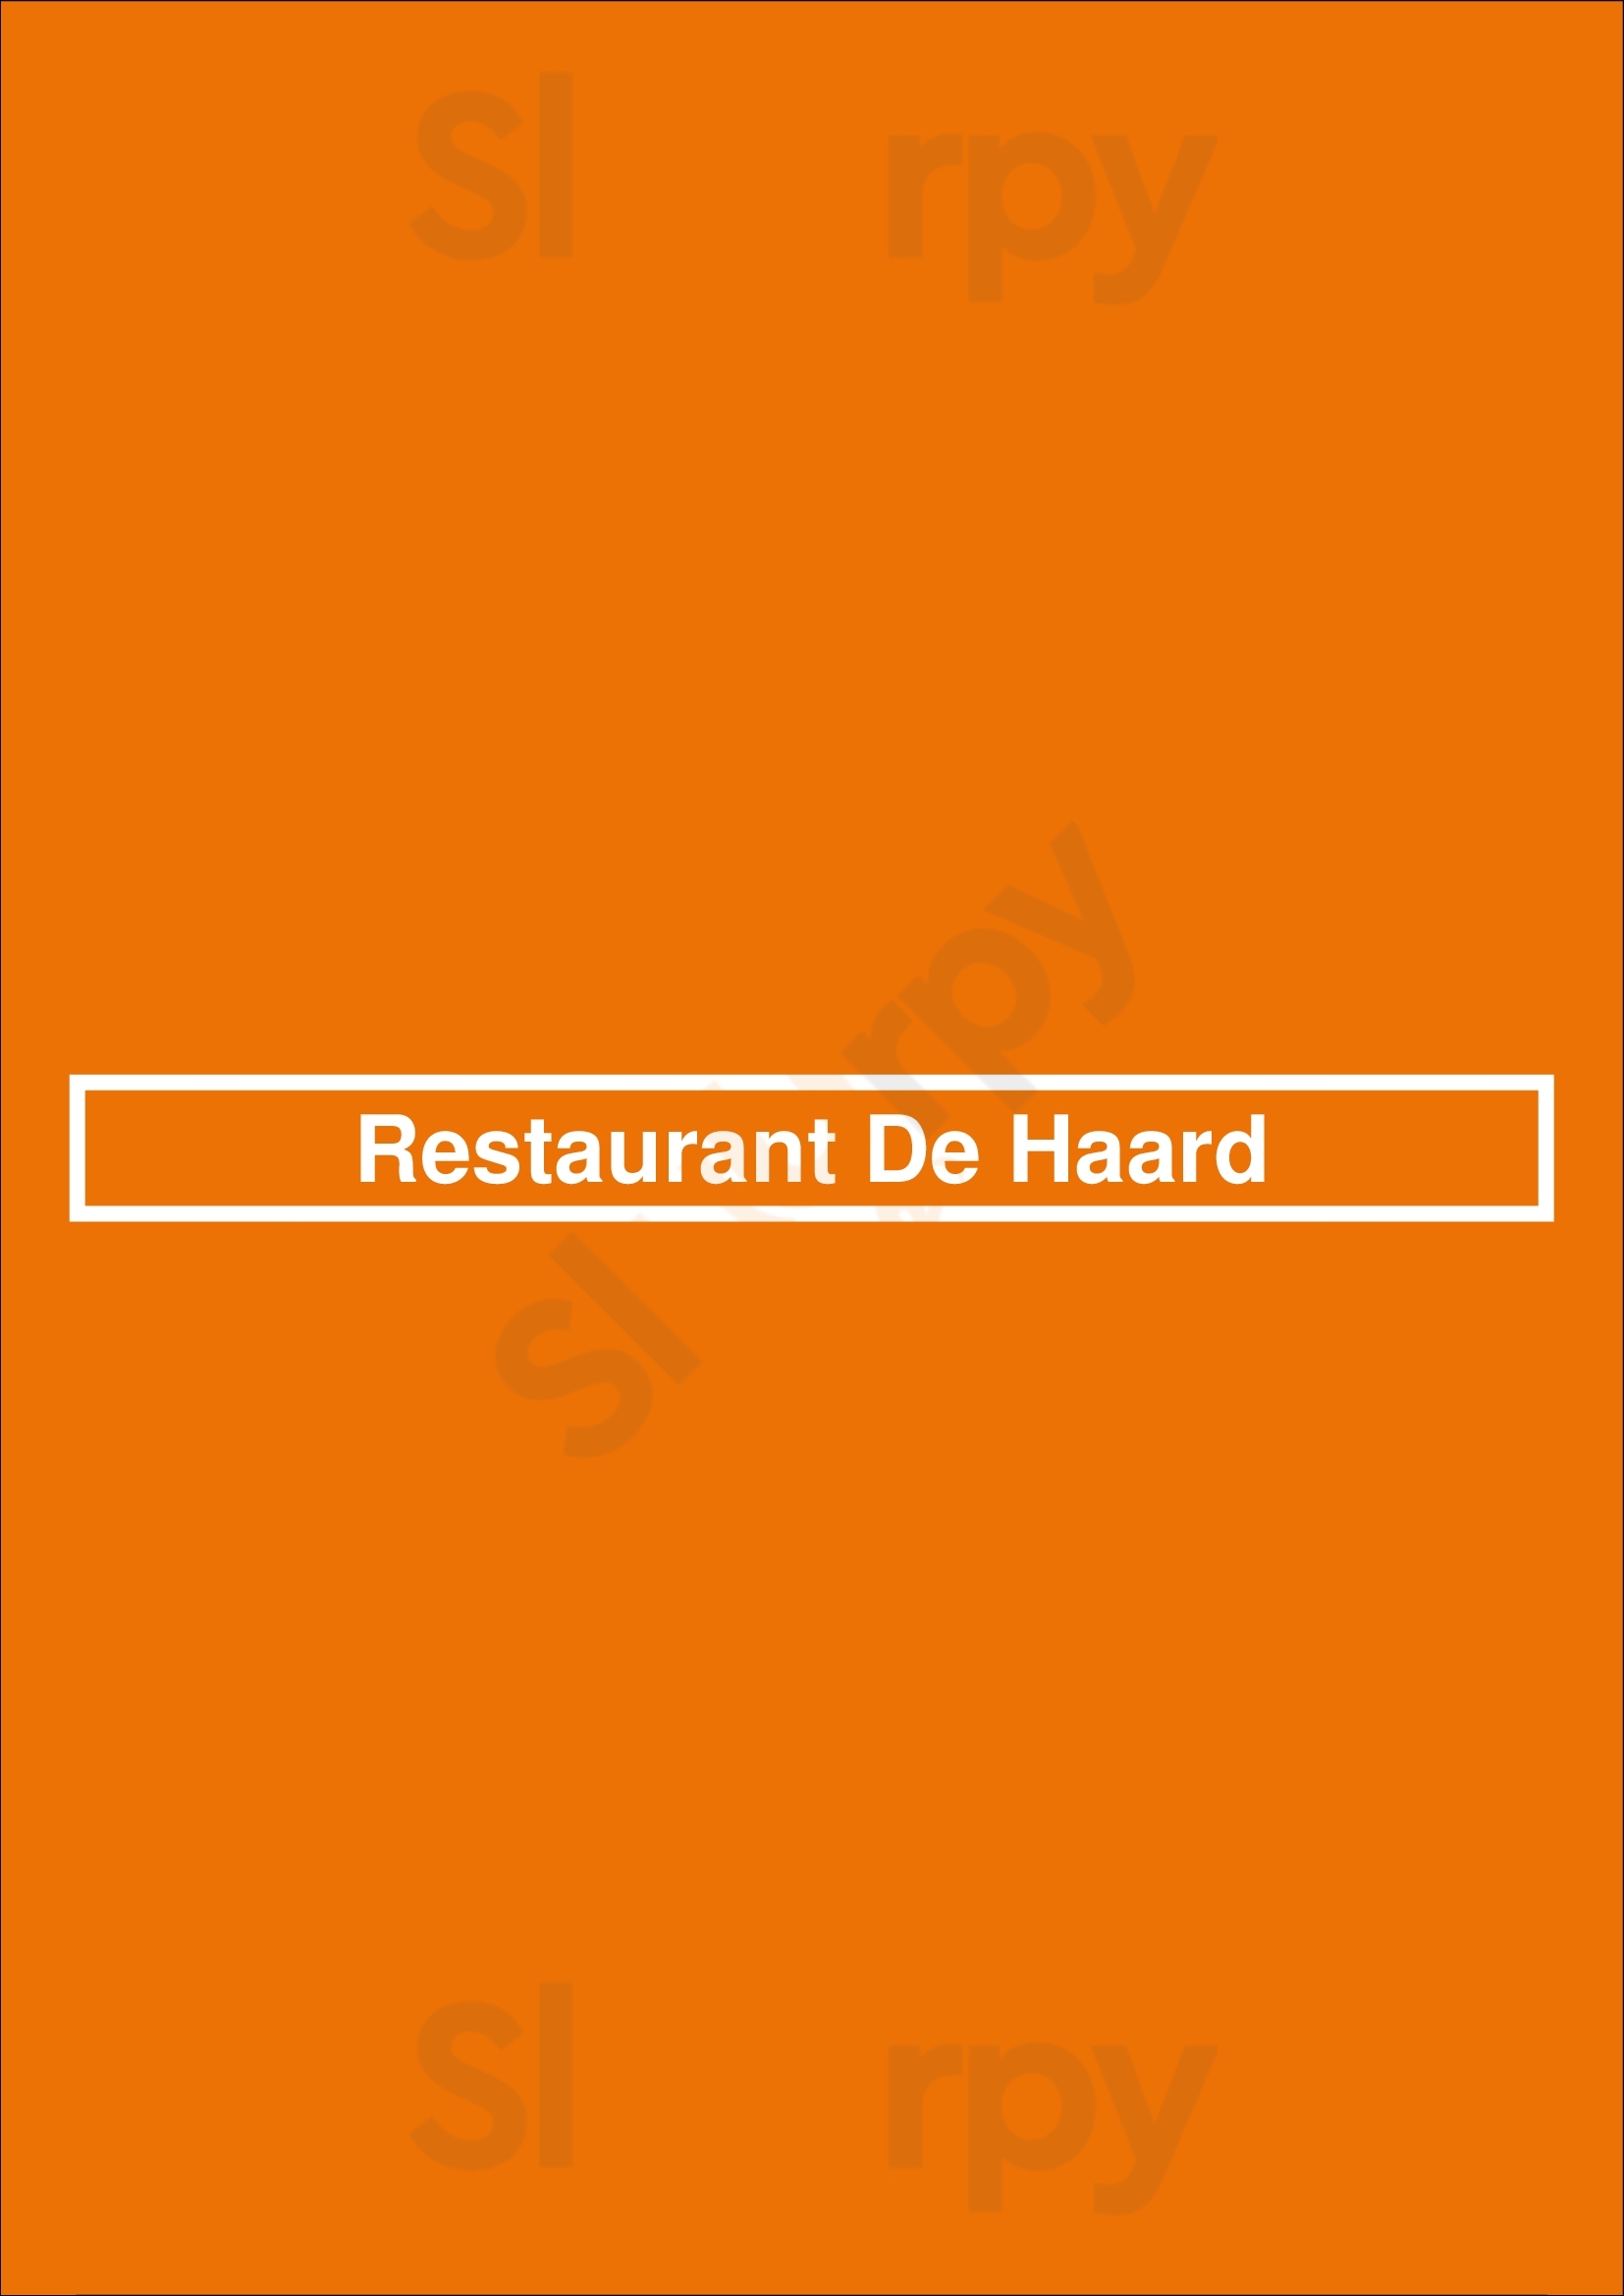 Restaurant De Haard Bosschenhoofd Menu - 1